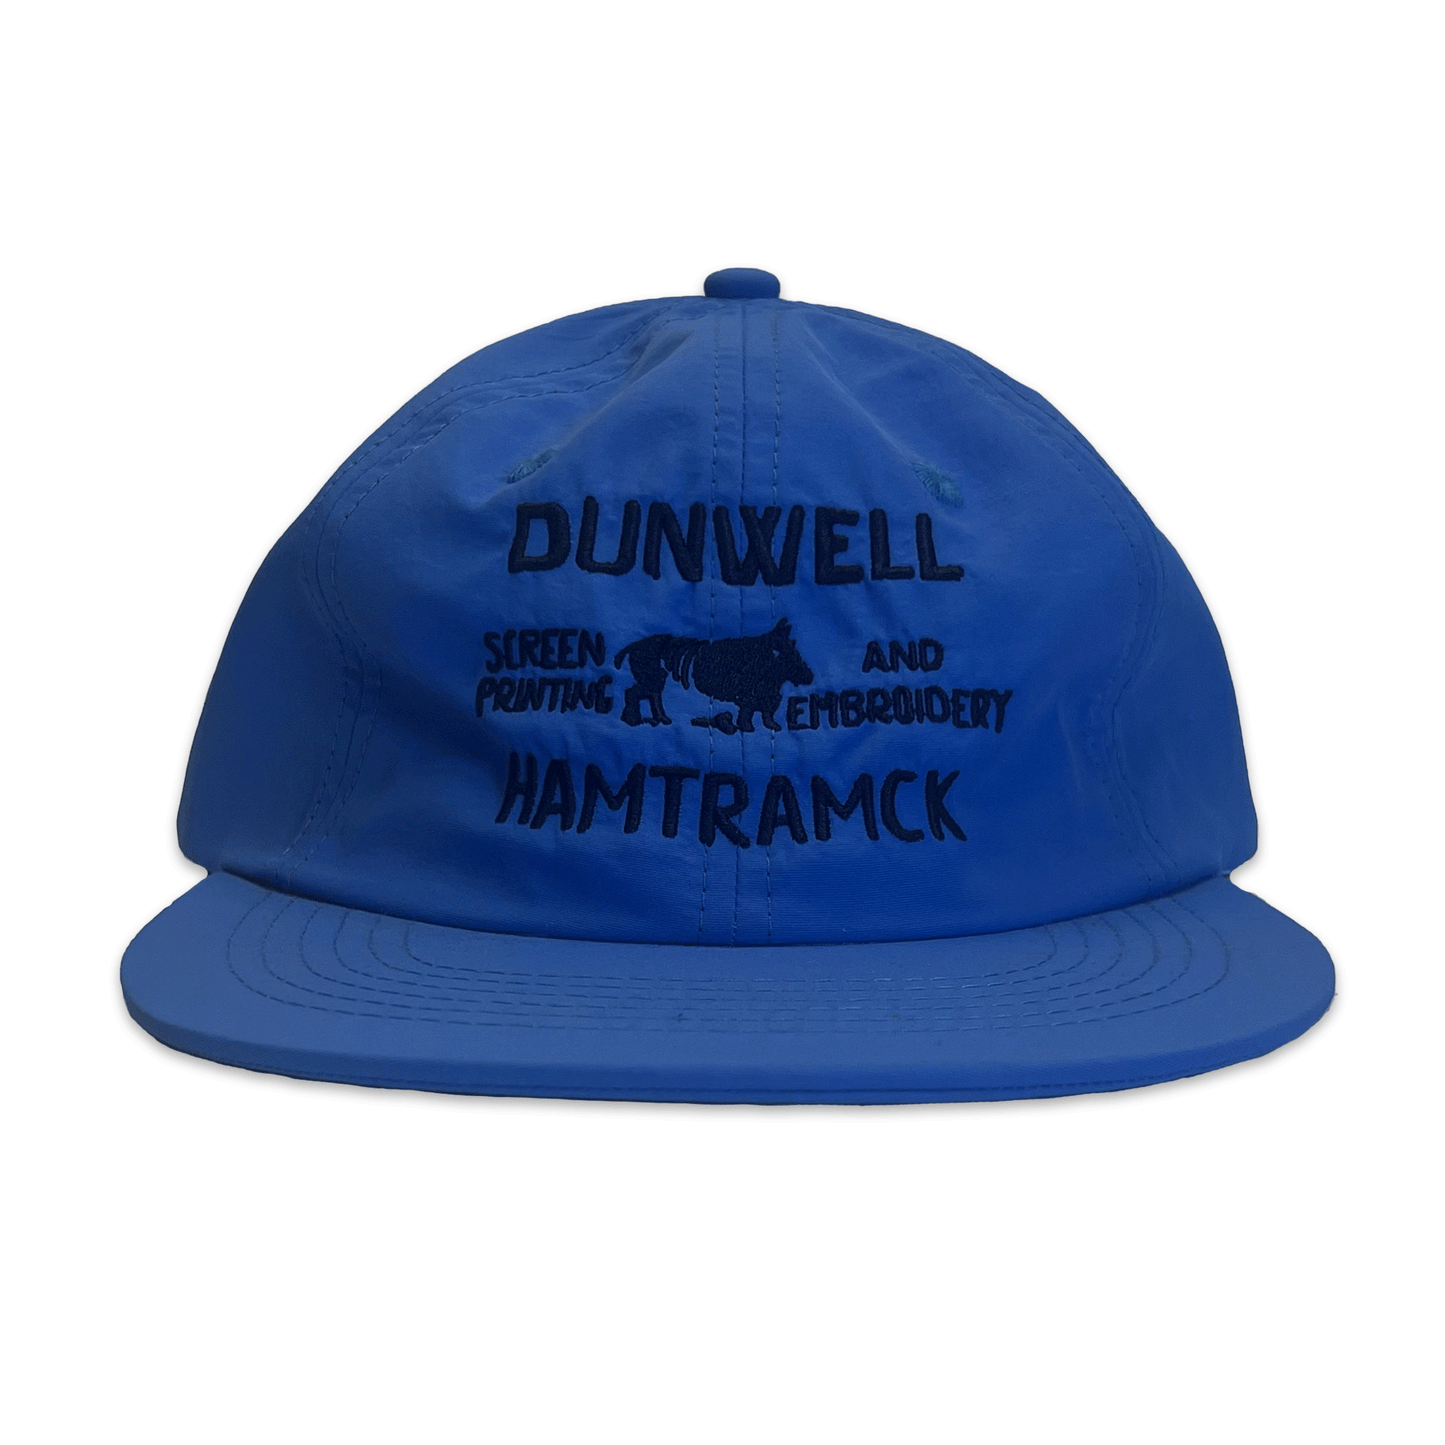 Bull-cap. hat. Blue